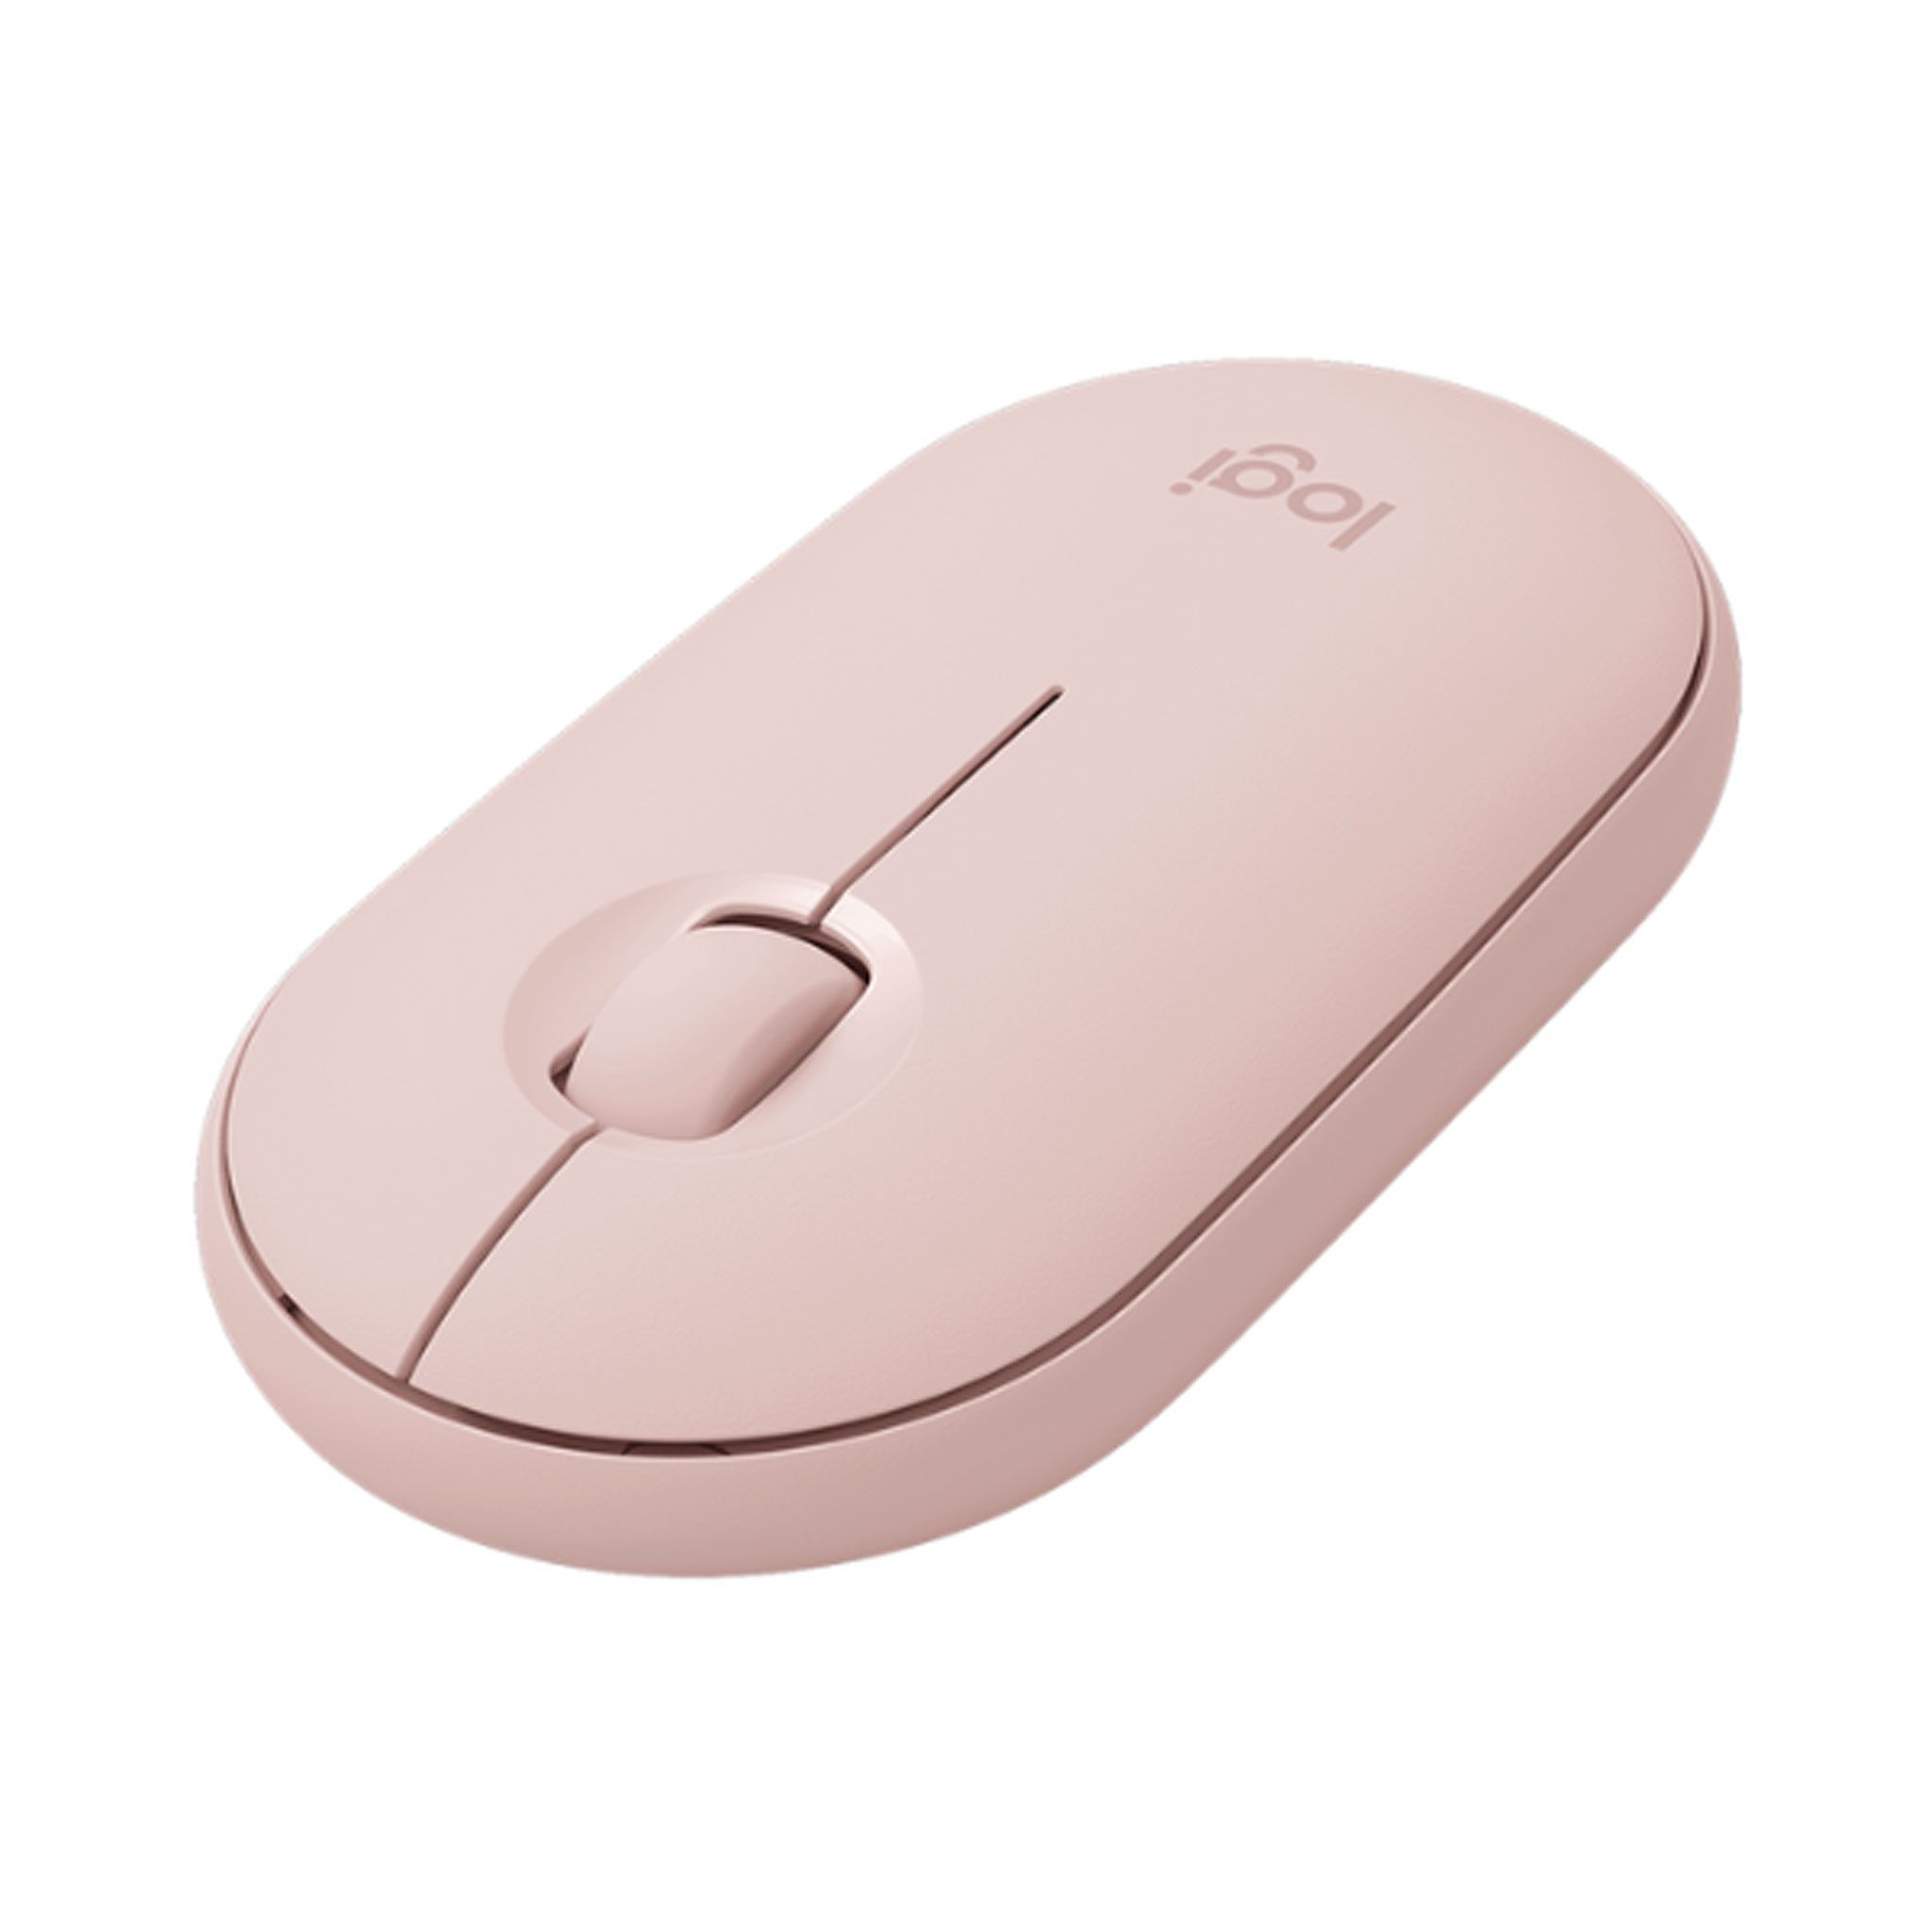 Chuột không dây Logitech Pebble M350s Wireless/Bluetooth - Hồng